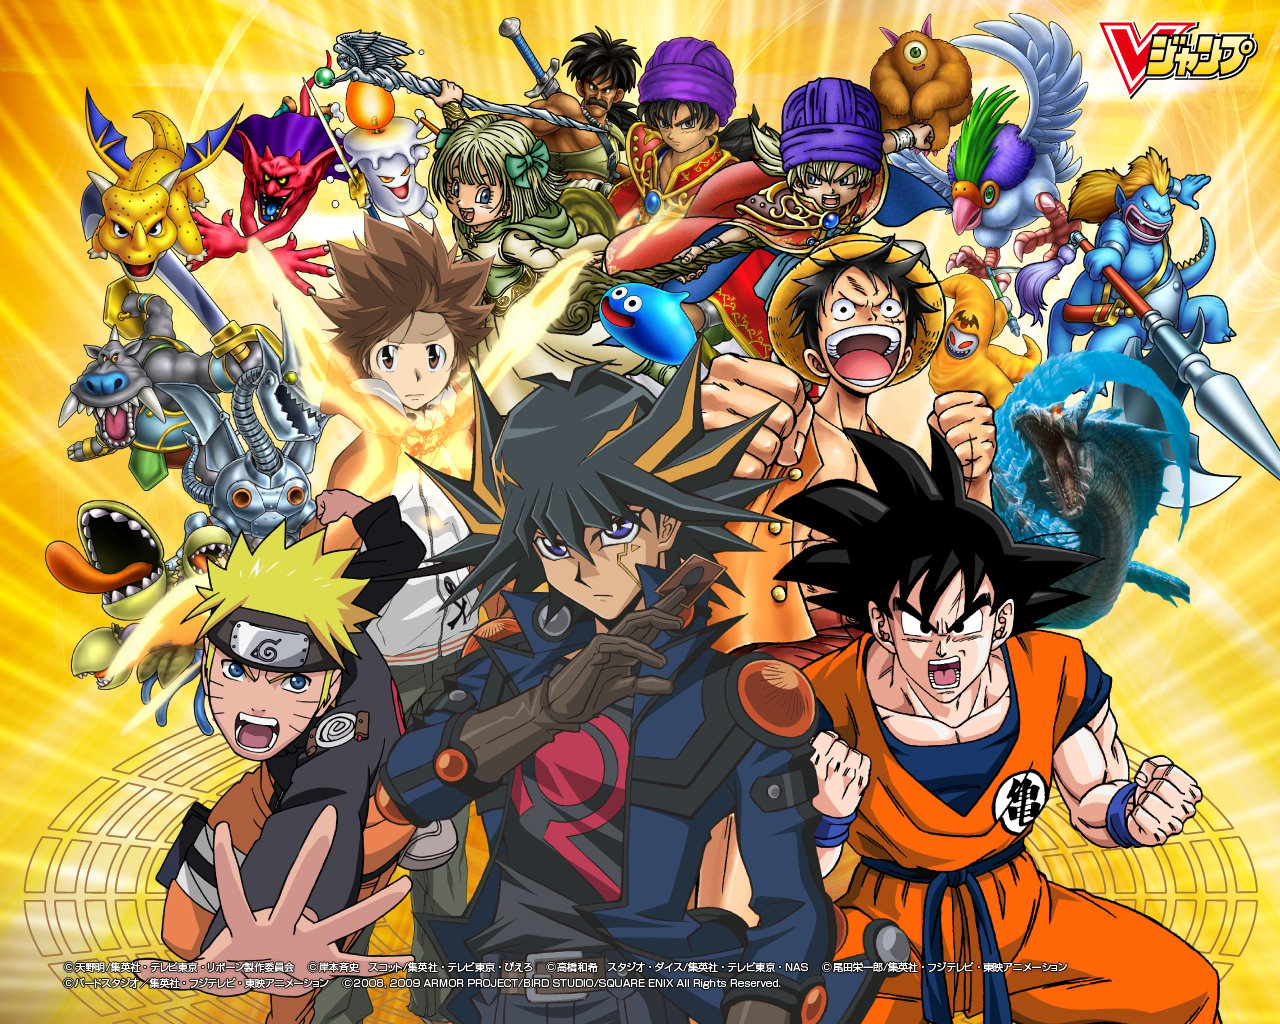 Free download Fotos de goku y naruto [1280x1024] for your Desktop, Mobile & Tablet. Explore Naruto and Goku Wallpaper. Kid Goku Wallpaper, Goku and Vegeta Wallpaper, Goku Super Saiyan 4 Wallpaper